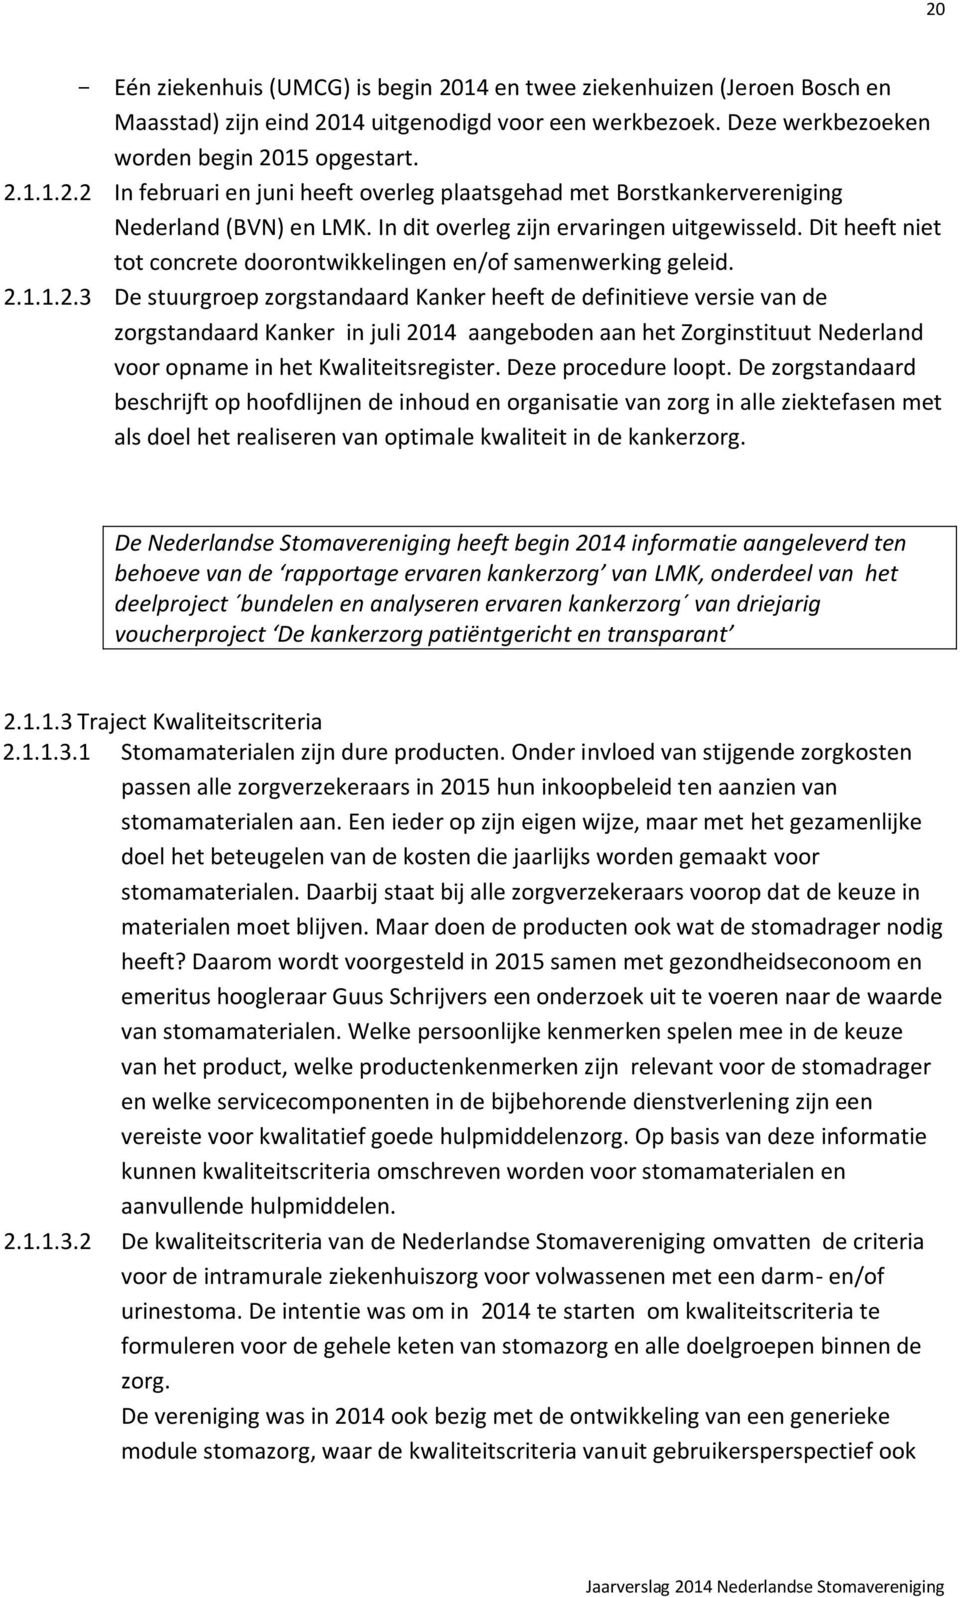 1.1.2.3 De stuurgroep zorgstandaard Kanker heeft de definitieve versie van de zorgstandaard Kanker in juli 2014 aangeboden aan het Zorginstituut Nederland voor opname in het Kwaliteitsregister.